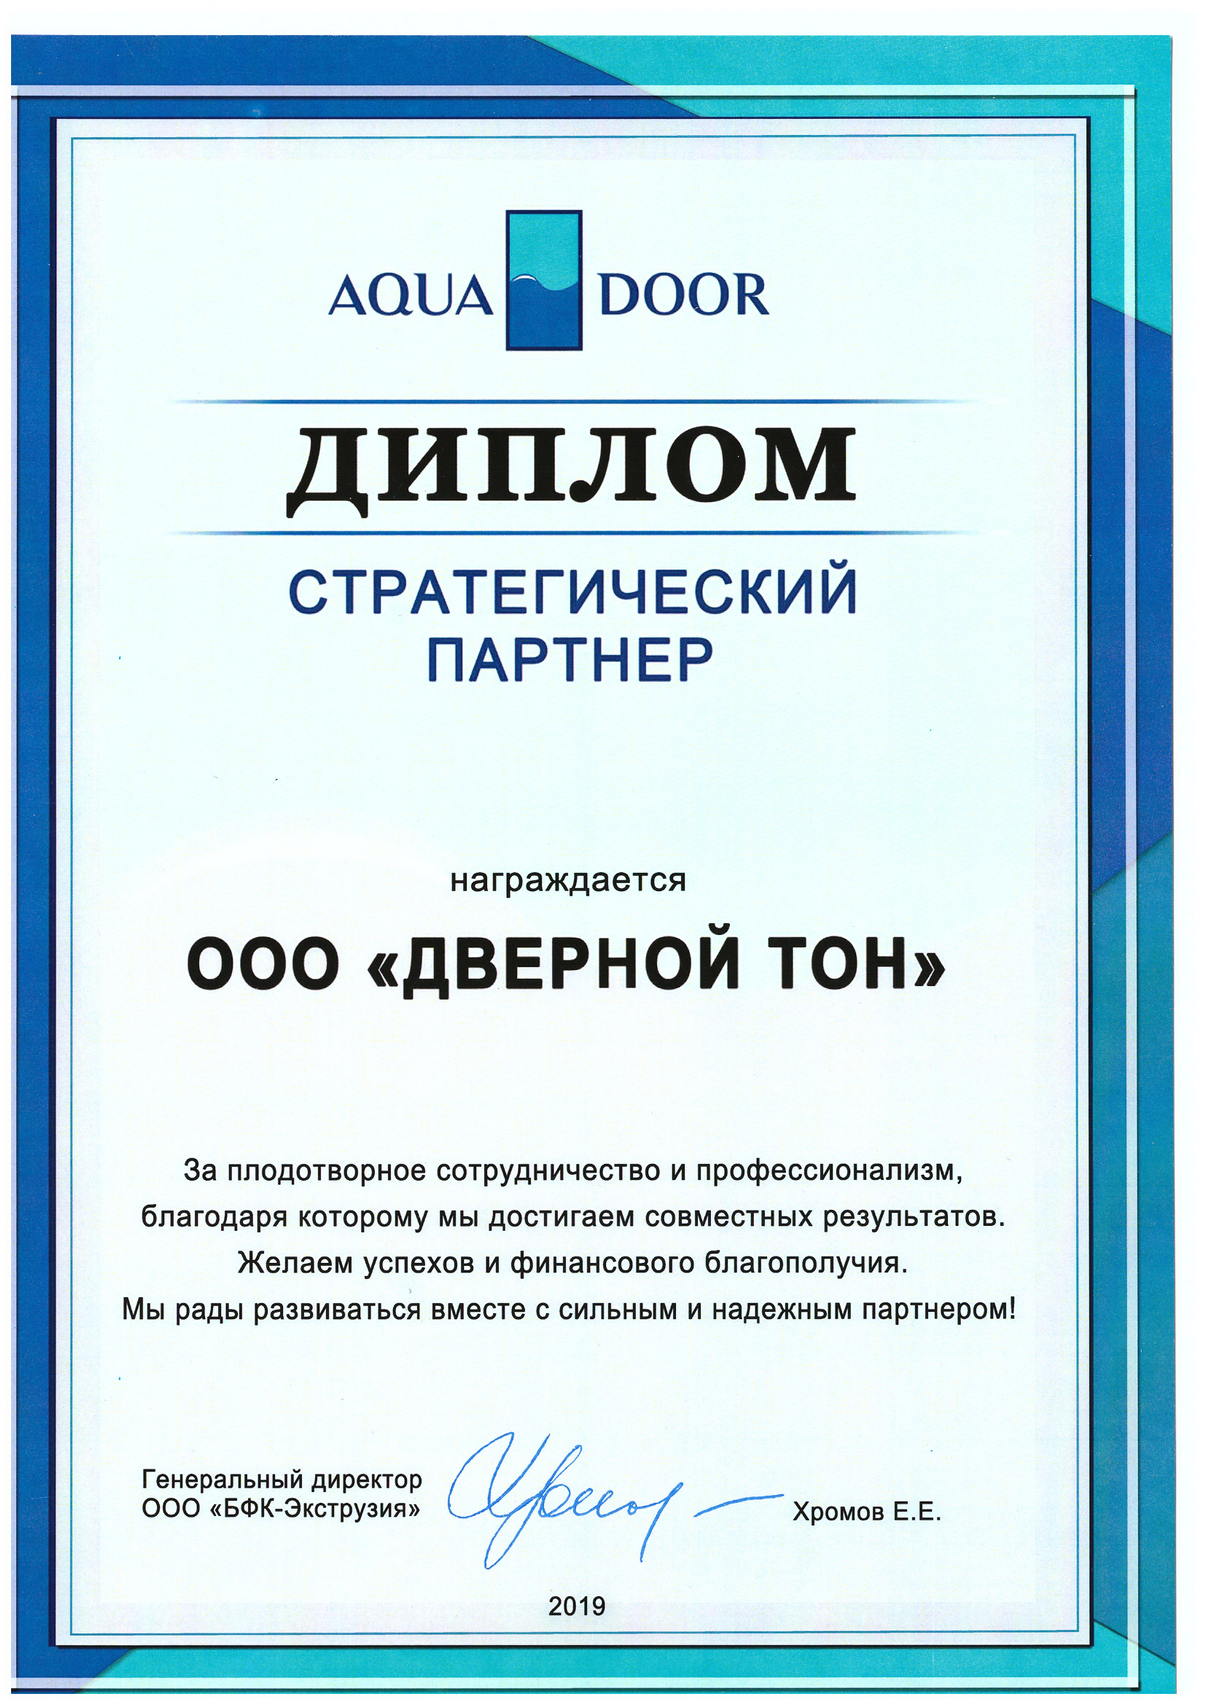 Компания Дверной Тон - стратегический партнёр фабрики BFK-Экструзия